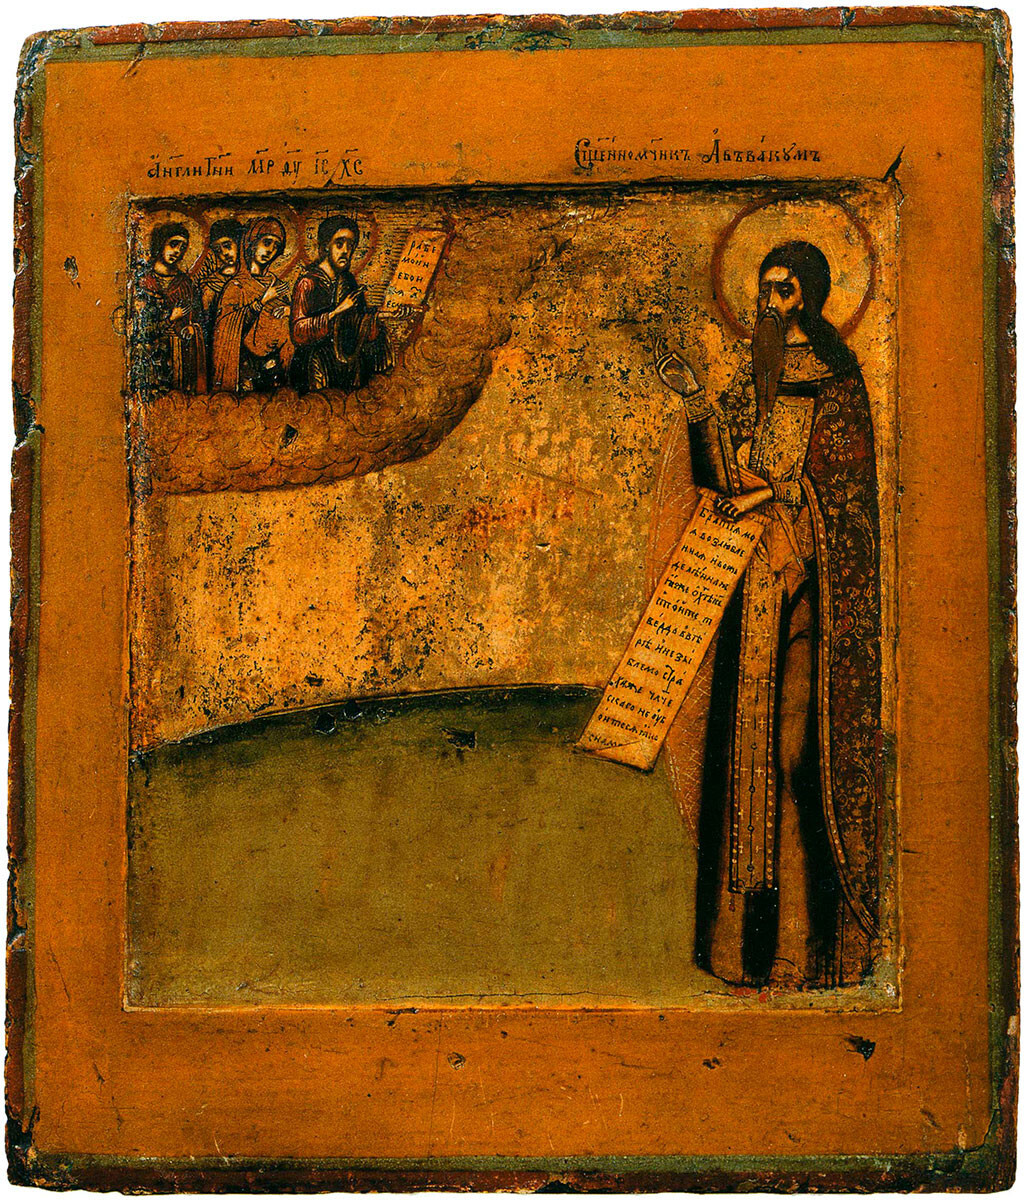 Icono de San Avvakum de finales del siglo XVII - principios del XVIII